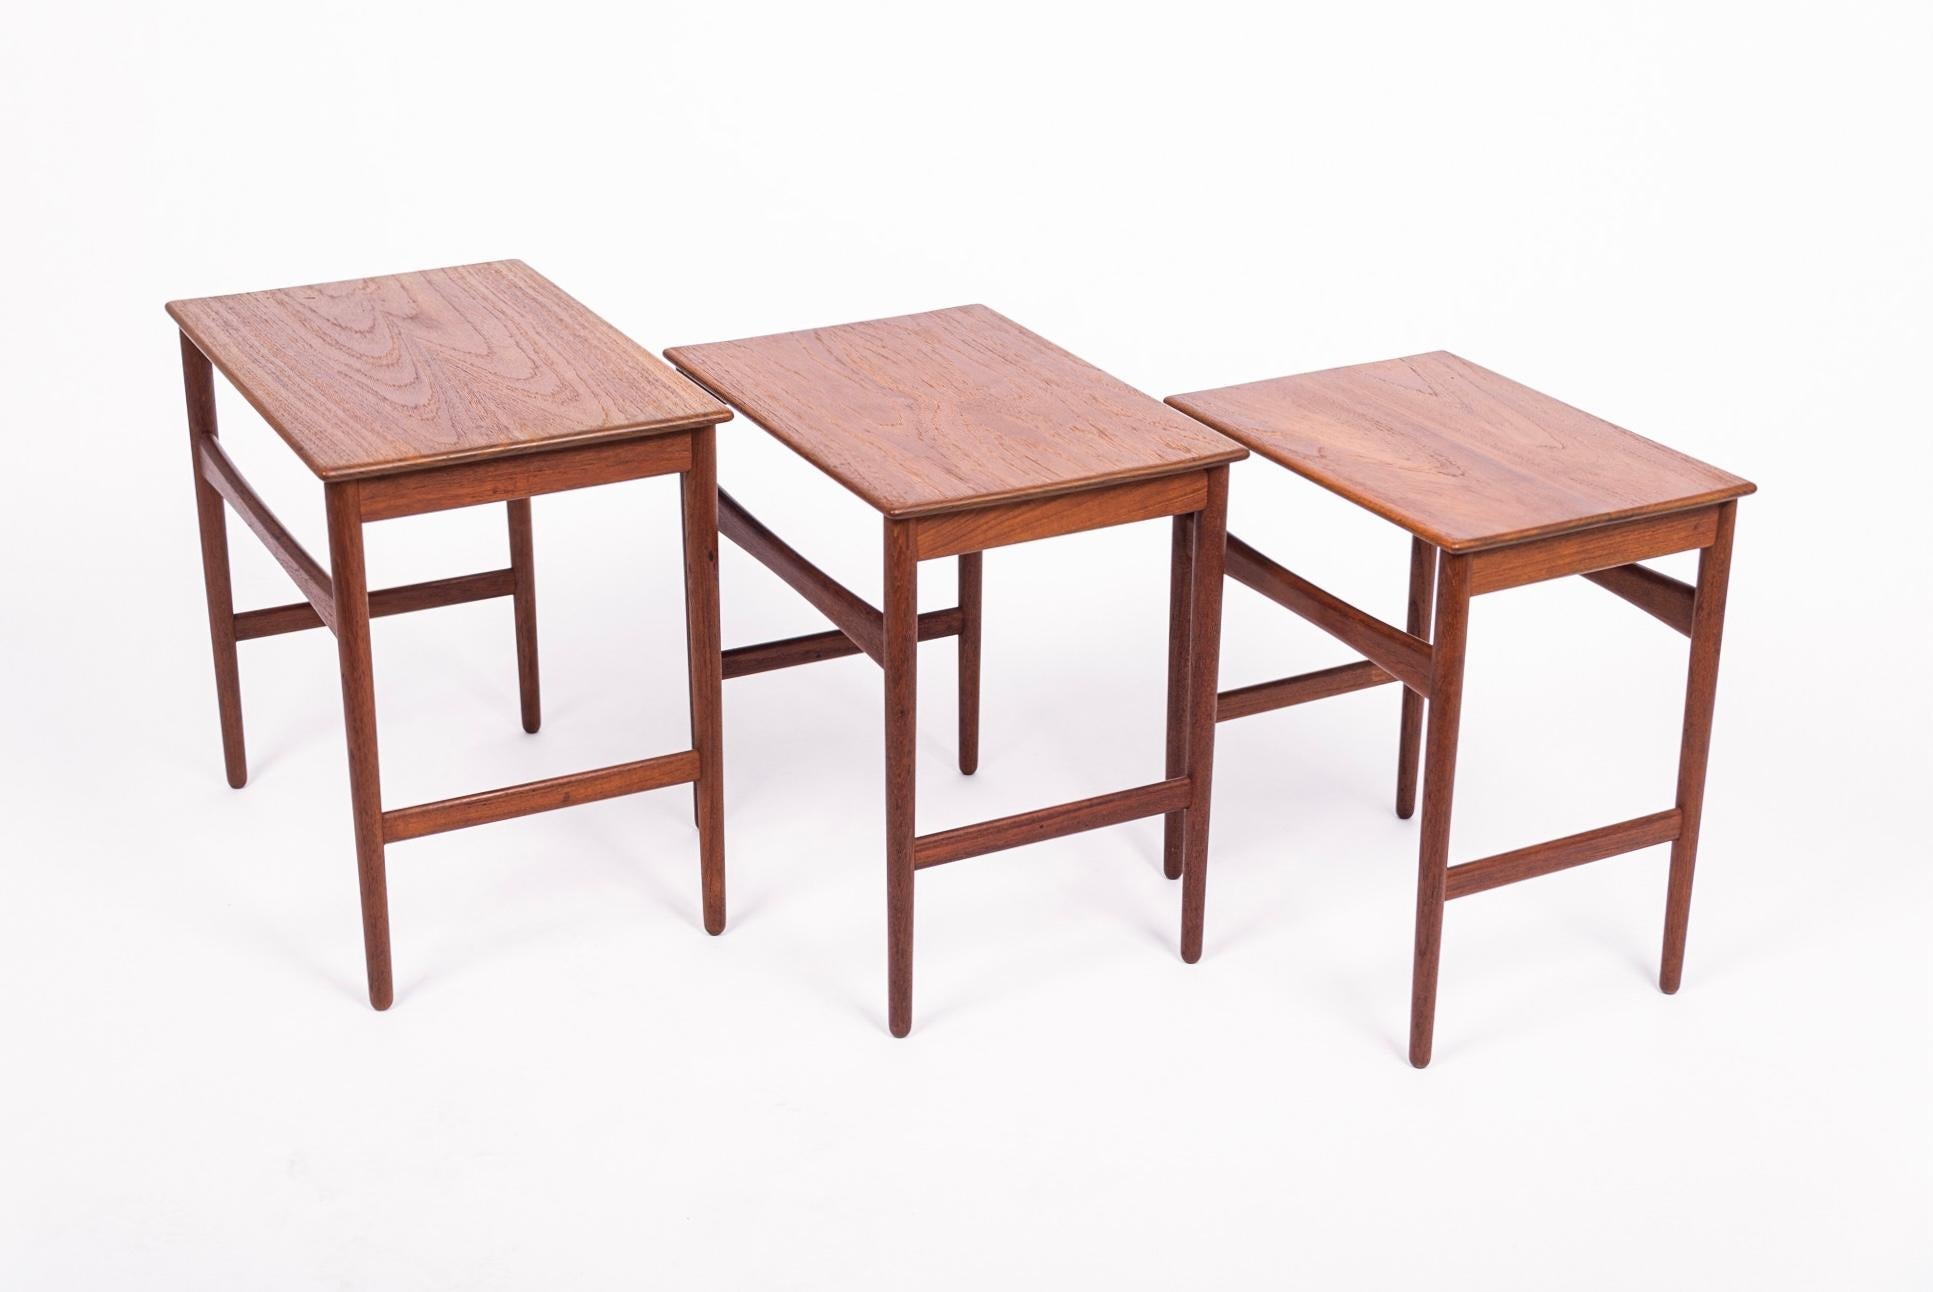 20th Century Danish Modern Teak Nesting Side Tables by Hans J. Wegner, 1960s For Sale